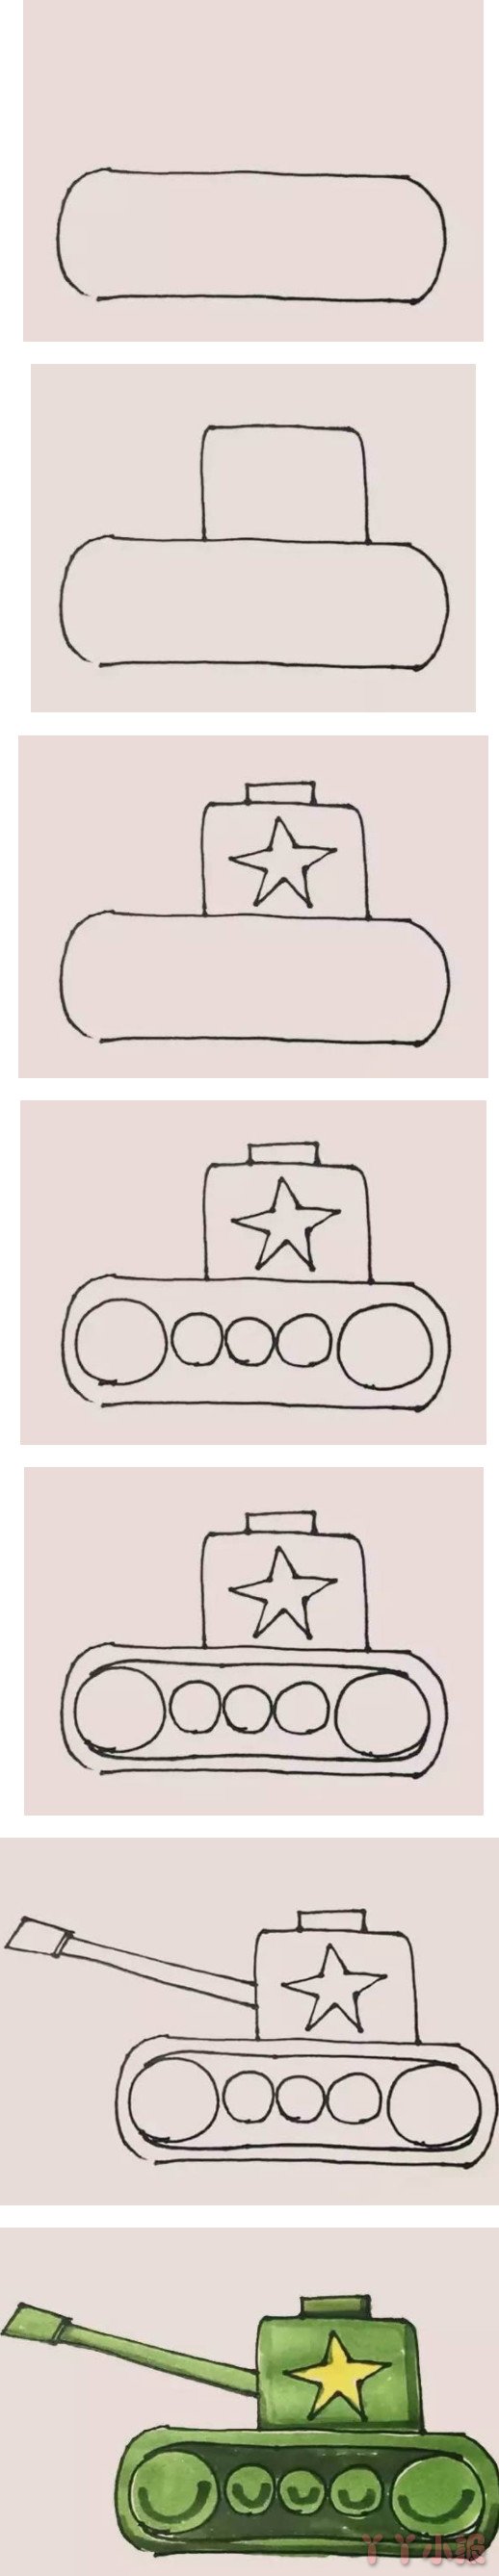  坦克的画法步骤涂颜色 坦克简笔画图片